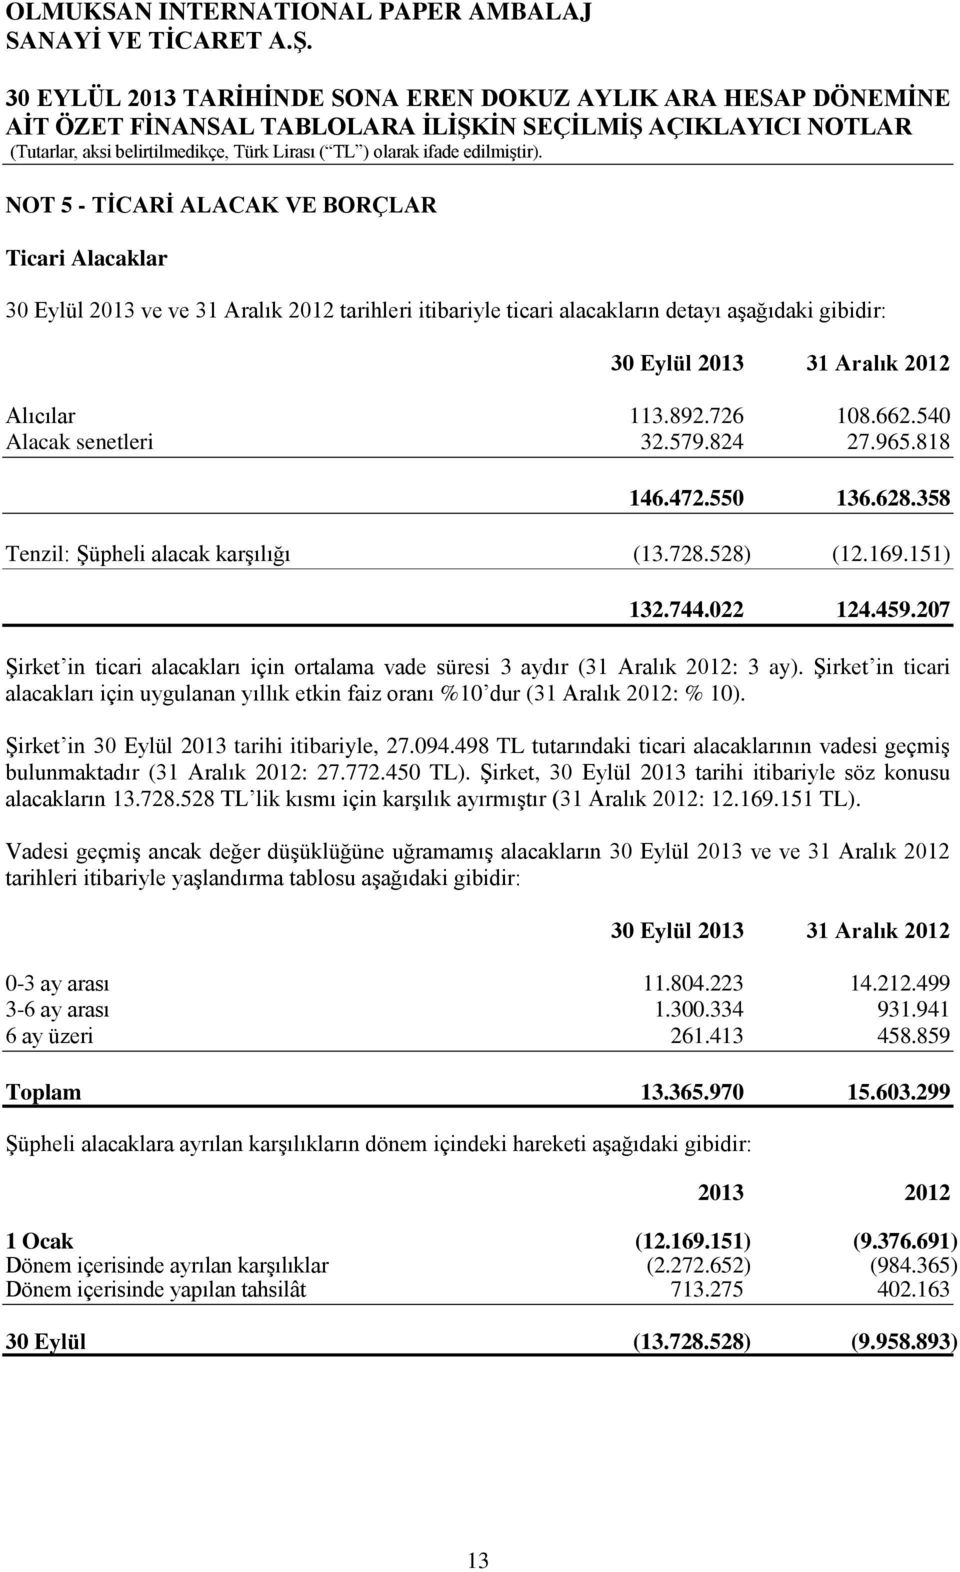 207 ġirket in ticari alacakları için ortalama vade süresi 3 aydır (31 Aralık 2012: 3 ay). ġirket in ticari alacakları için uygulanan yıllık etkin faiz oranı %10 dur (31 Aralık 2012: % 10).